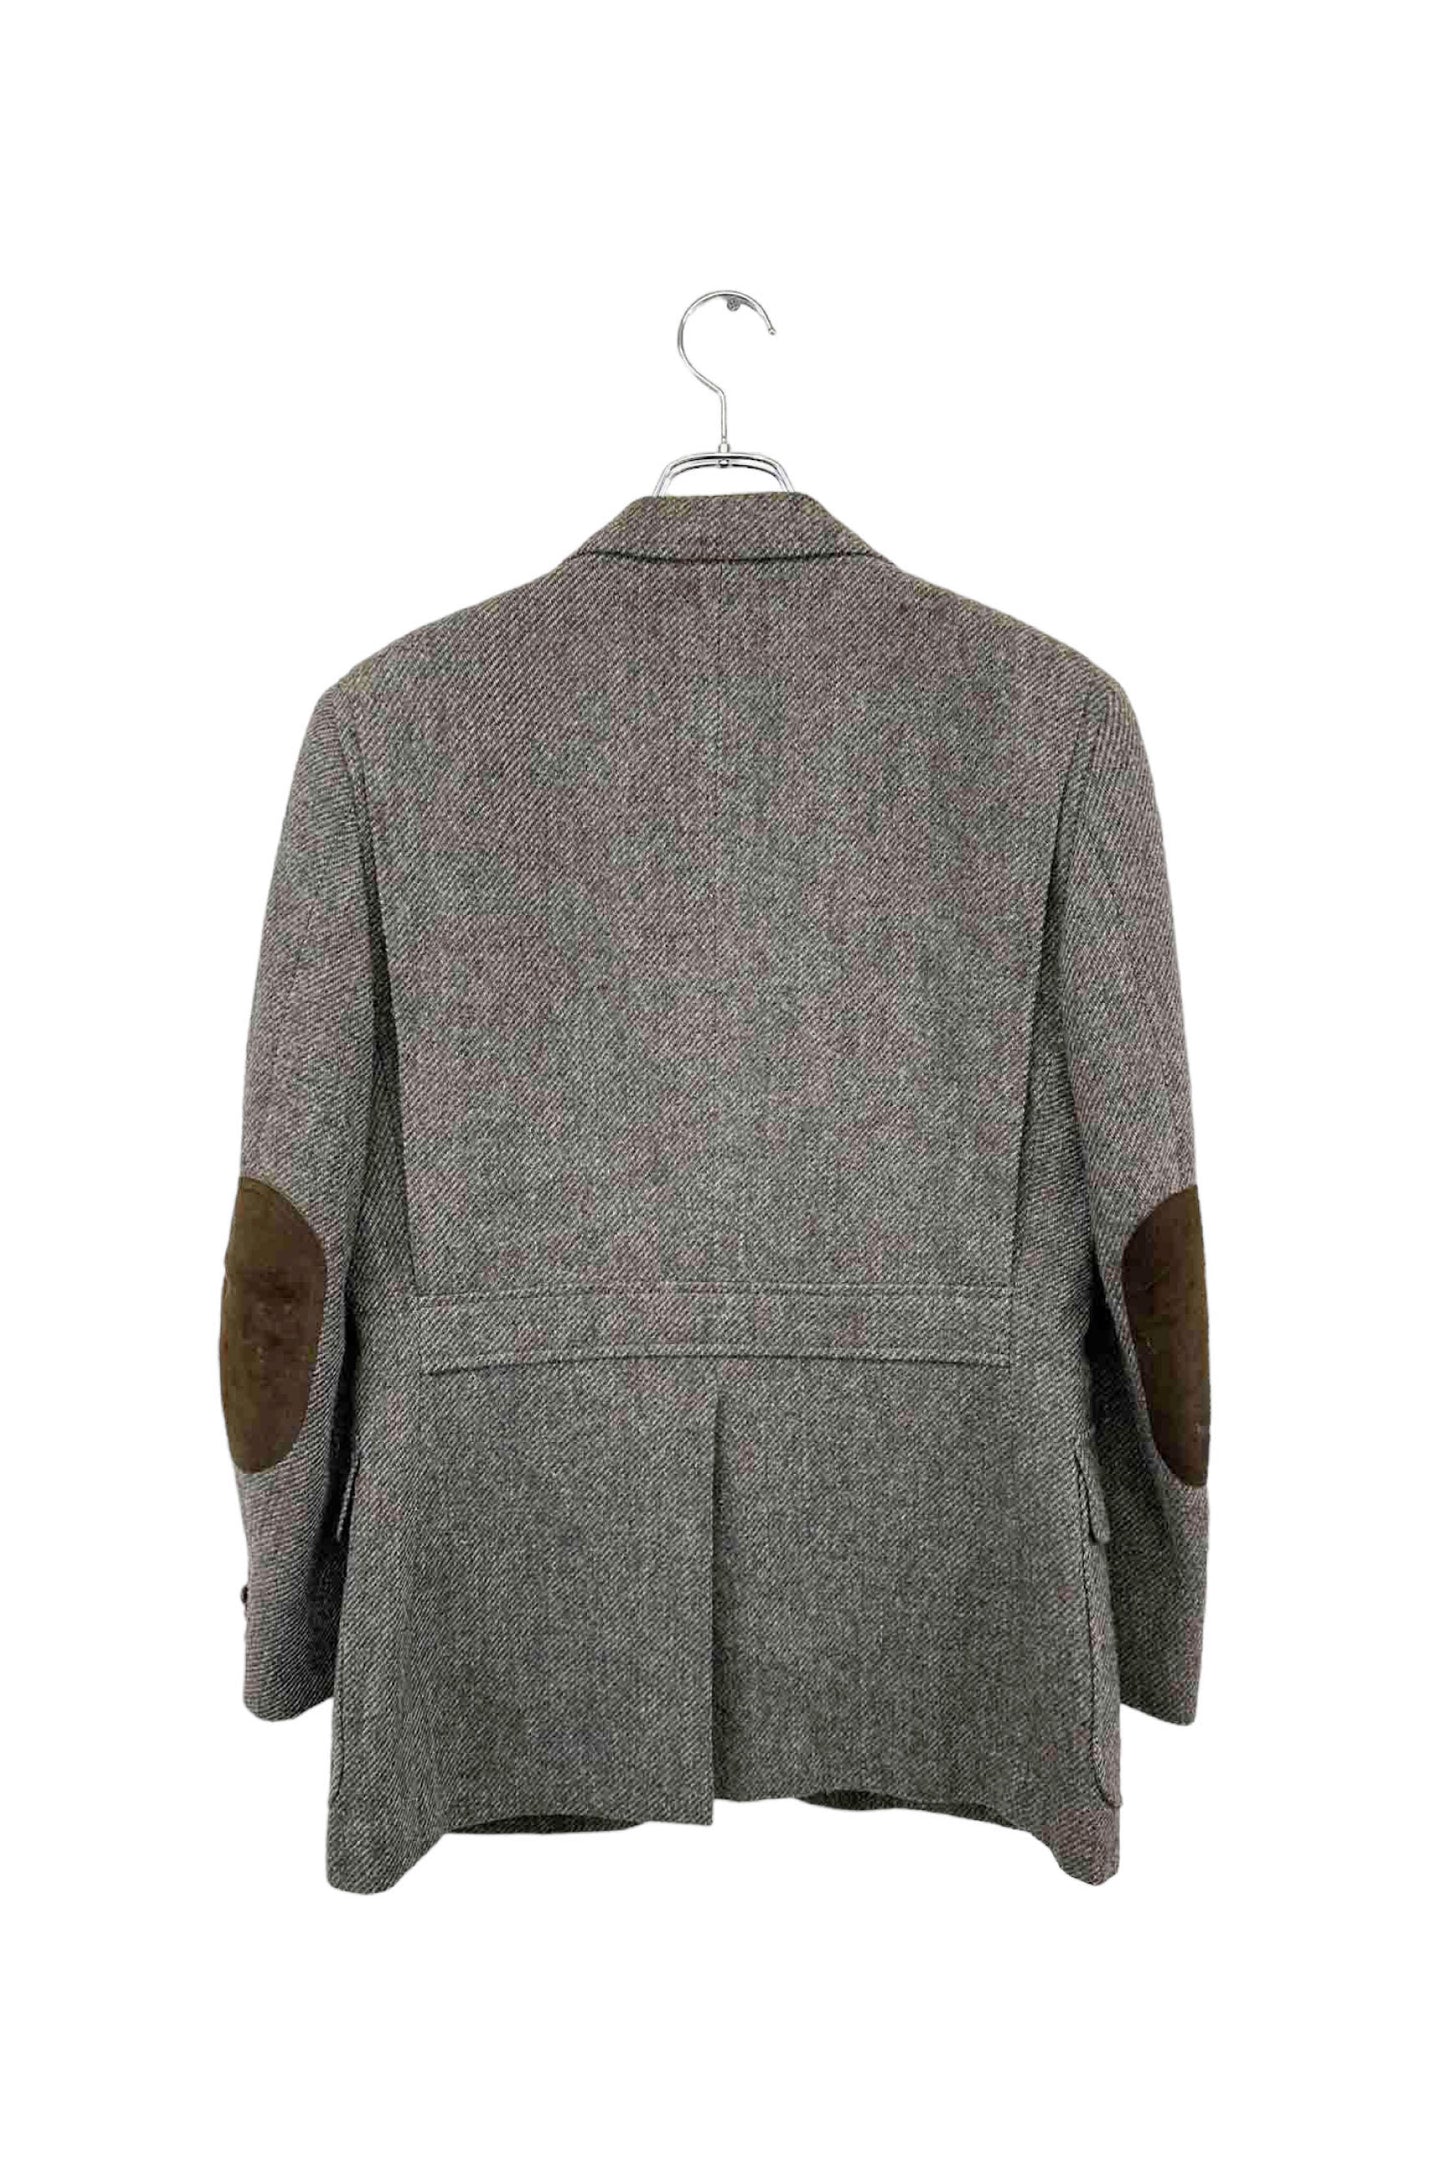 Burberrys wool jacket